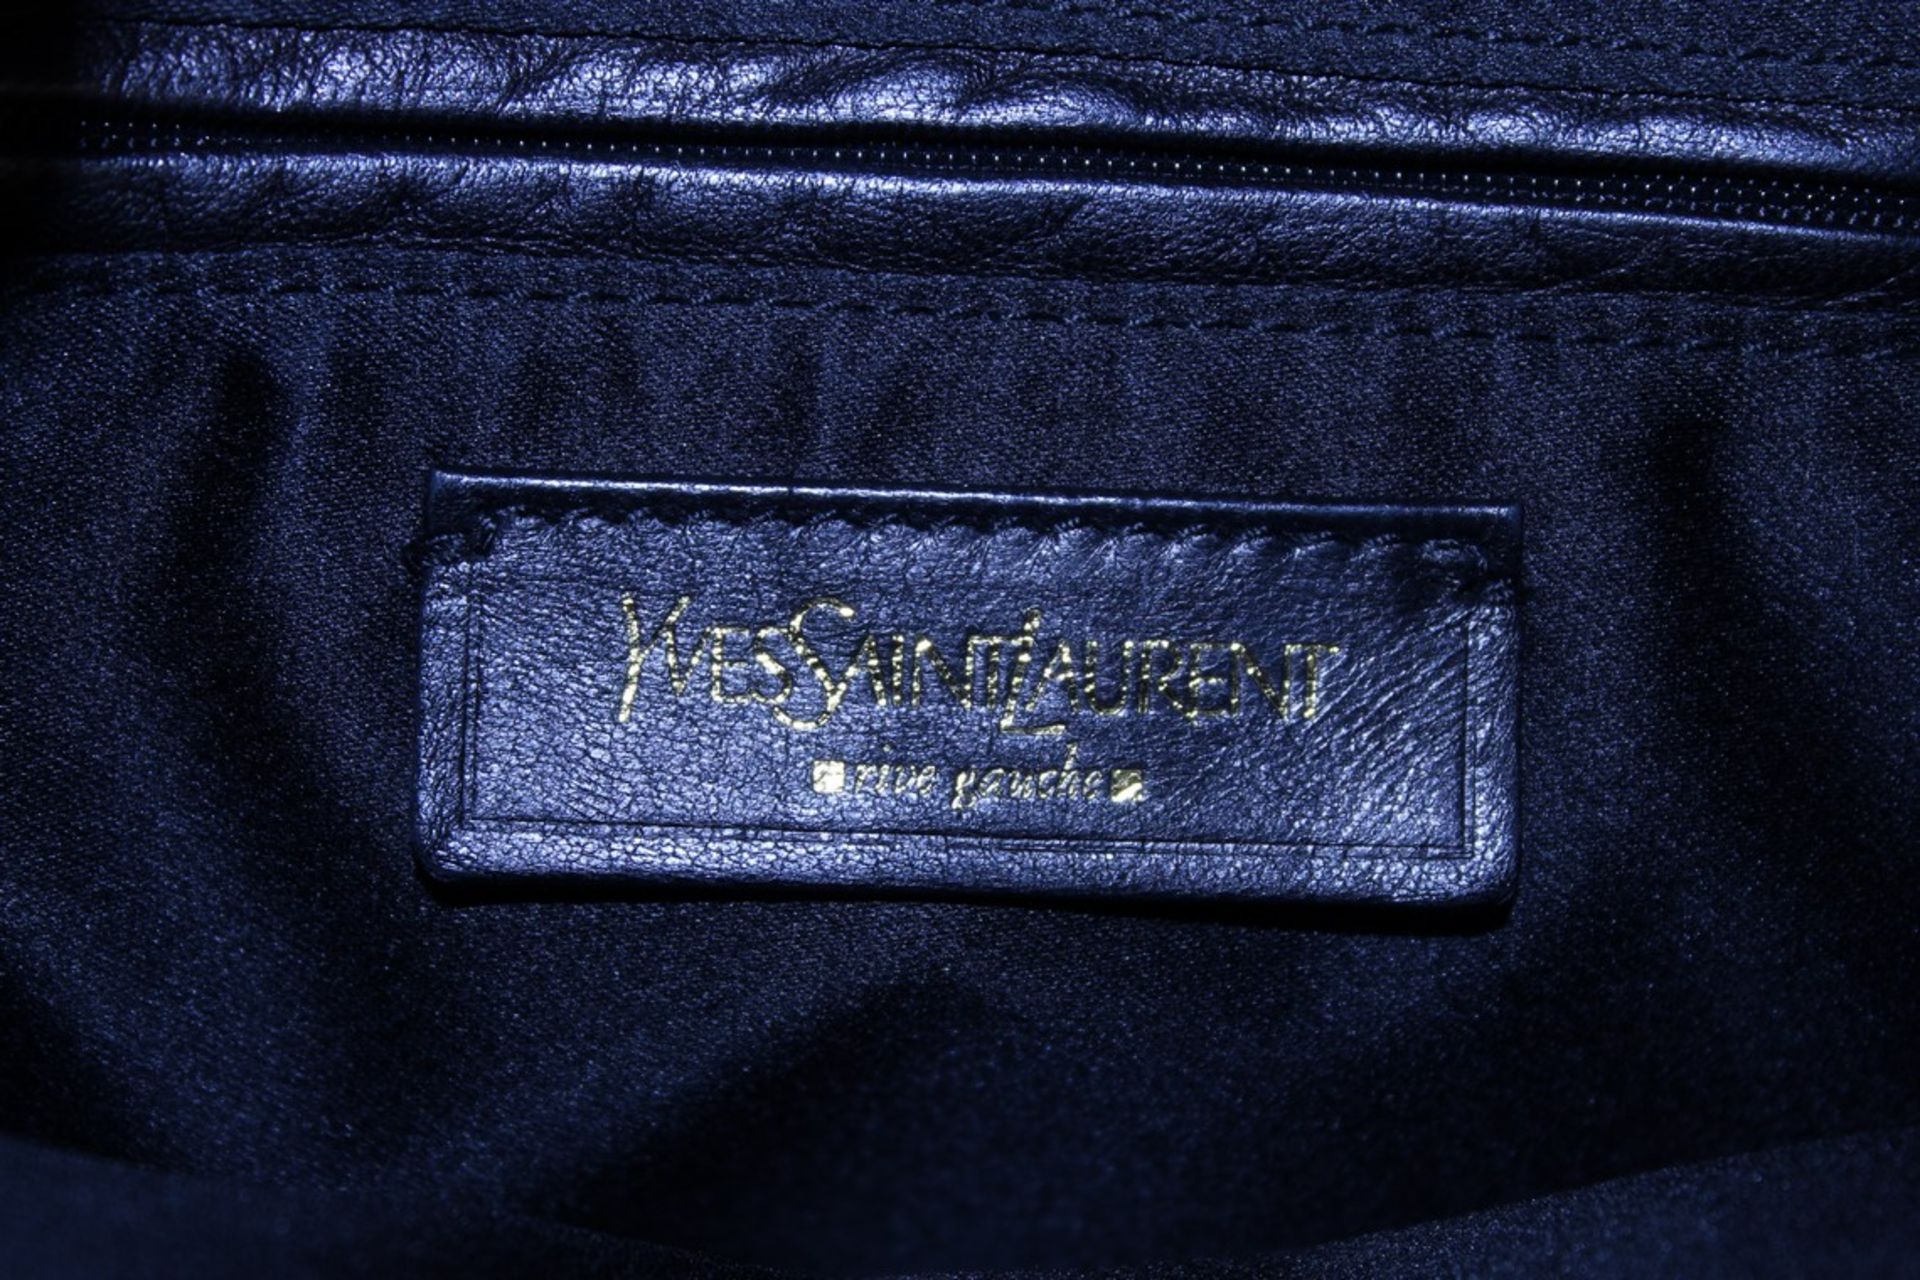 Rrp £1,000 Yves St-Lauren Muse 1 Shoulder Bag - Image 4 of 5